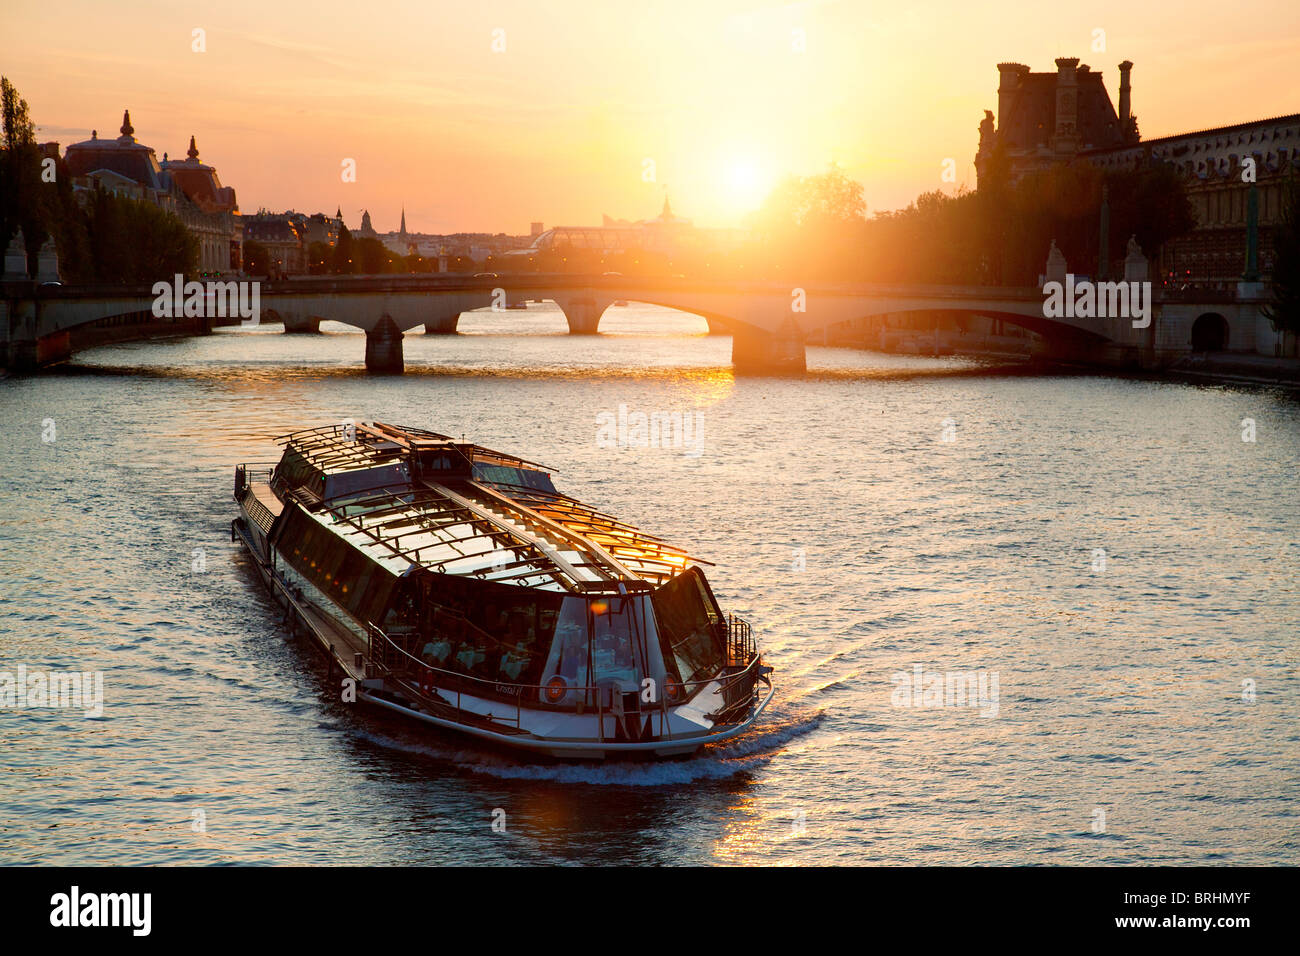 Europa, Frankreich, Paris, Touristenboot am Seineufer bei Sonnenuntergang Stockfoto